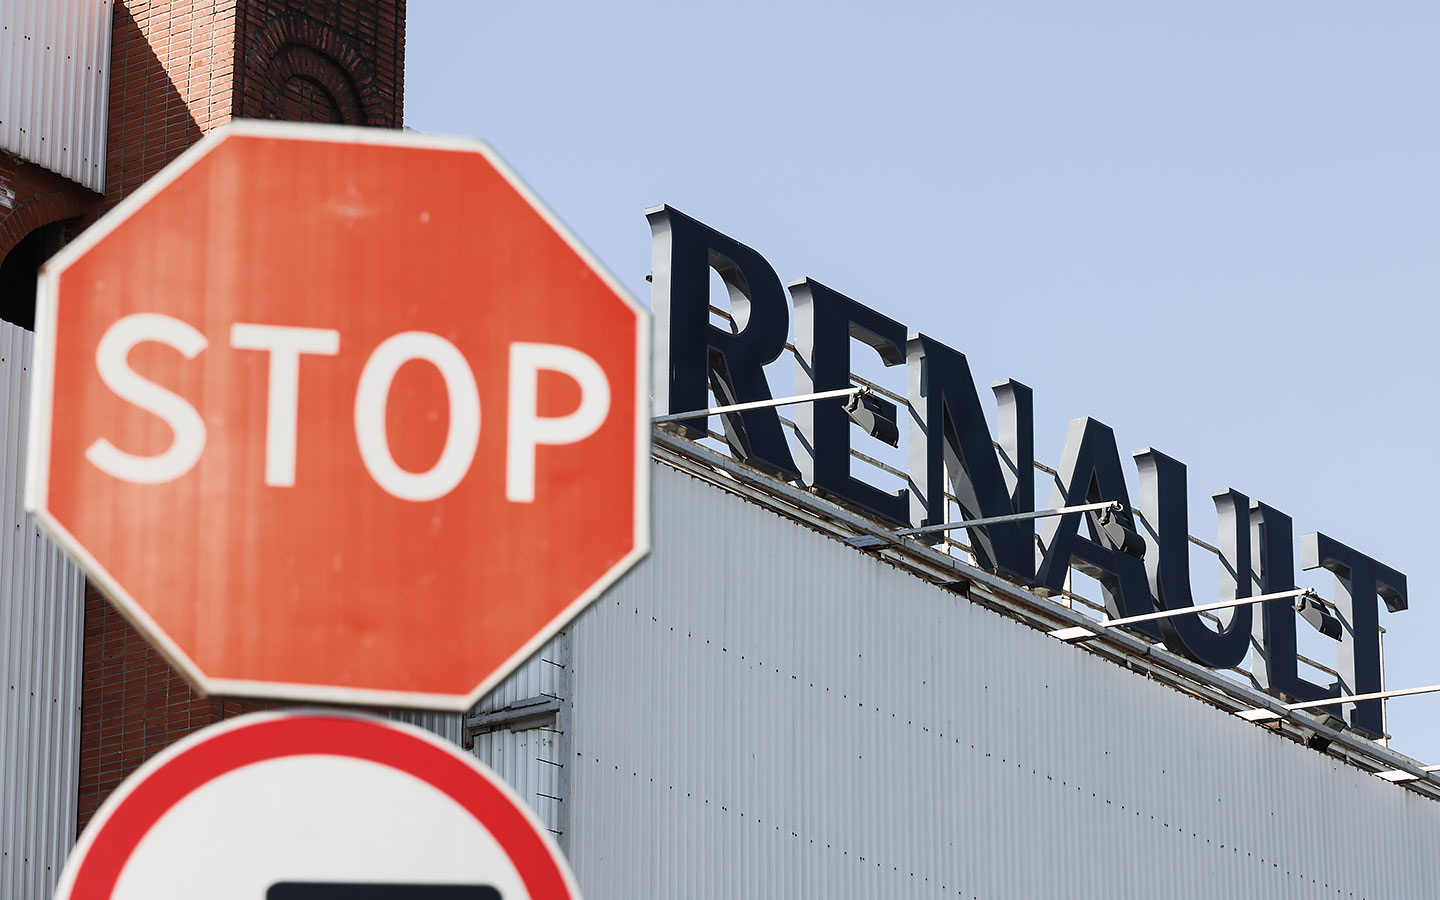              Renault Russia переименуют в МАЗ «Москвич»         